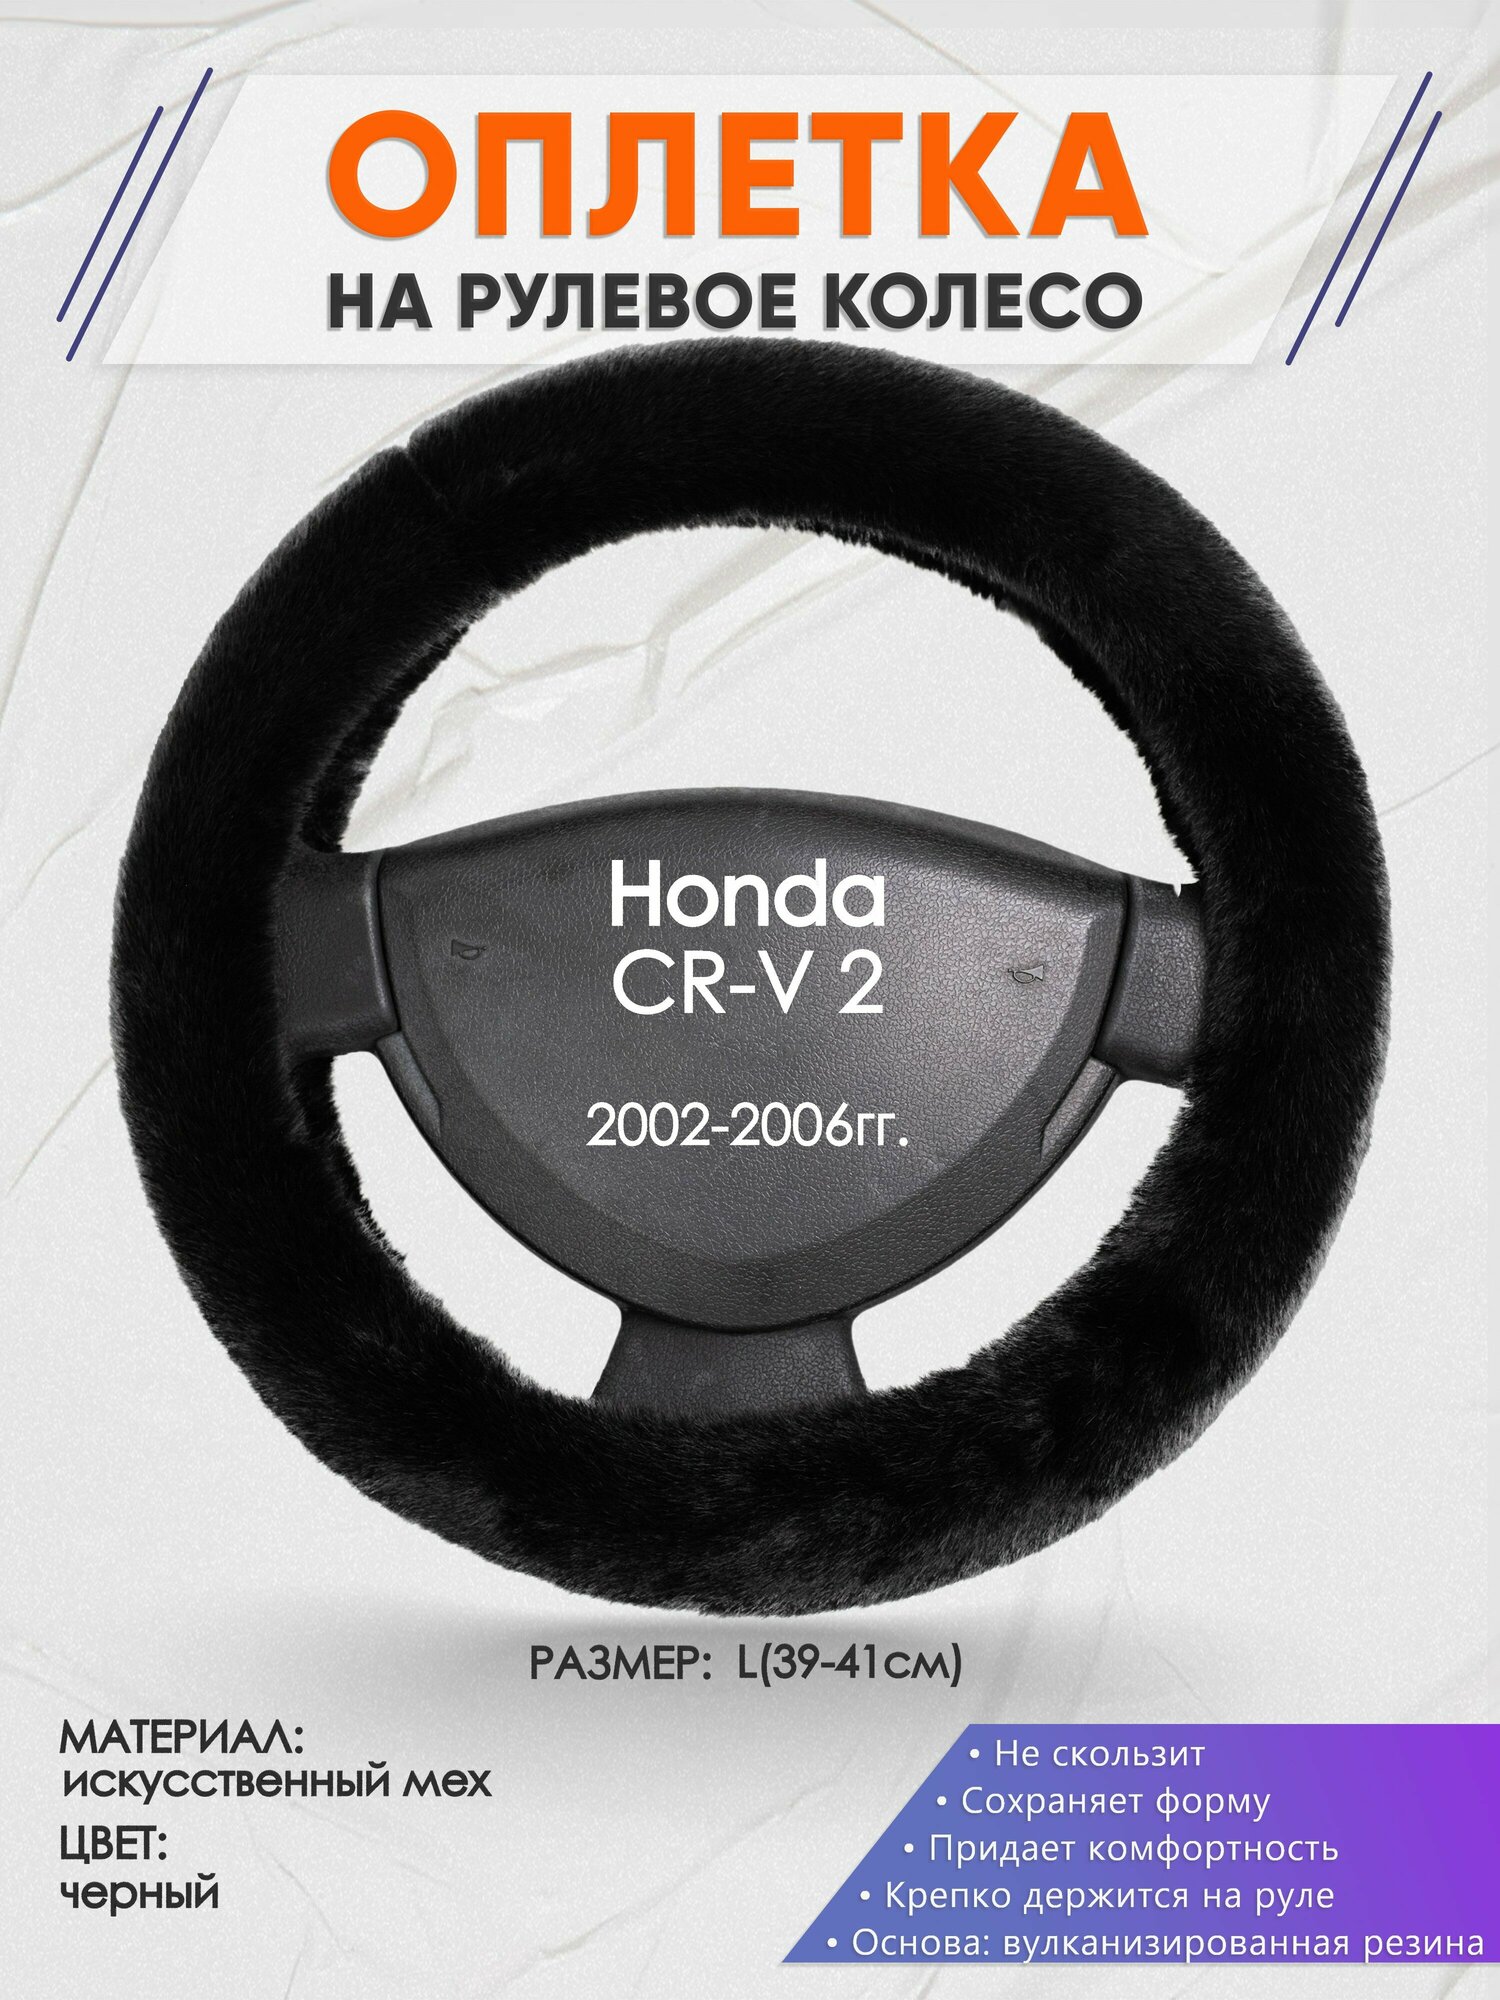 Оплетка на руль для Honda CR-V 2(Хонда срв 2) 2002-2006, L(39-41см), Искусственный мех 40